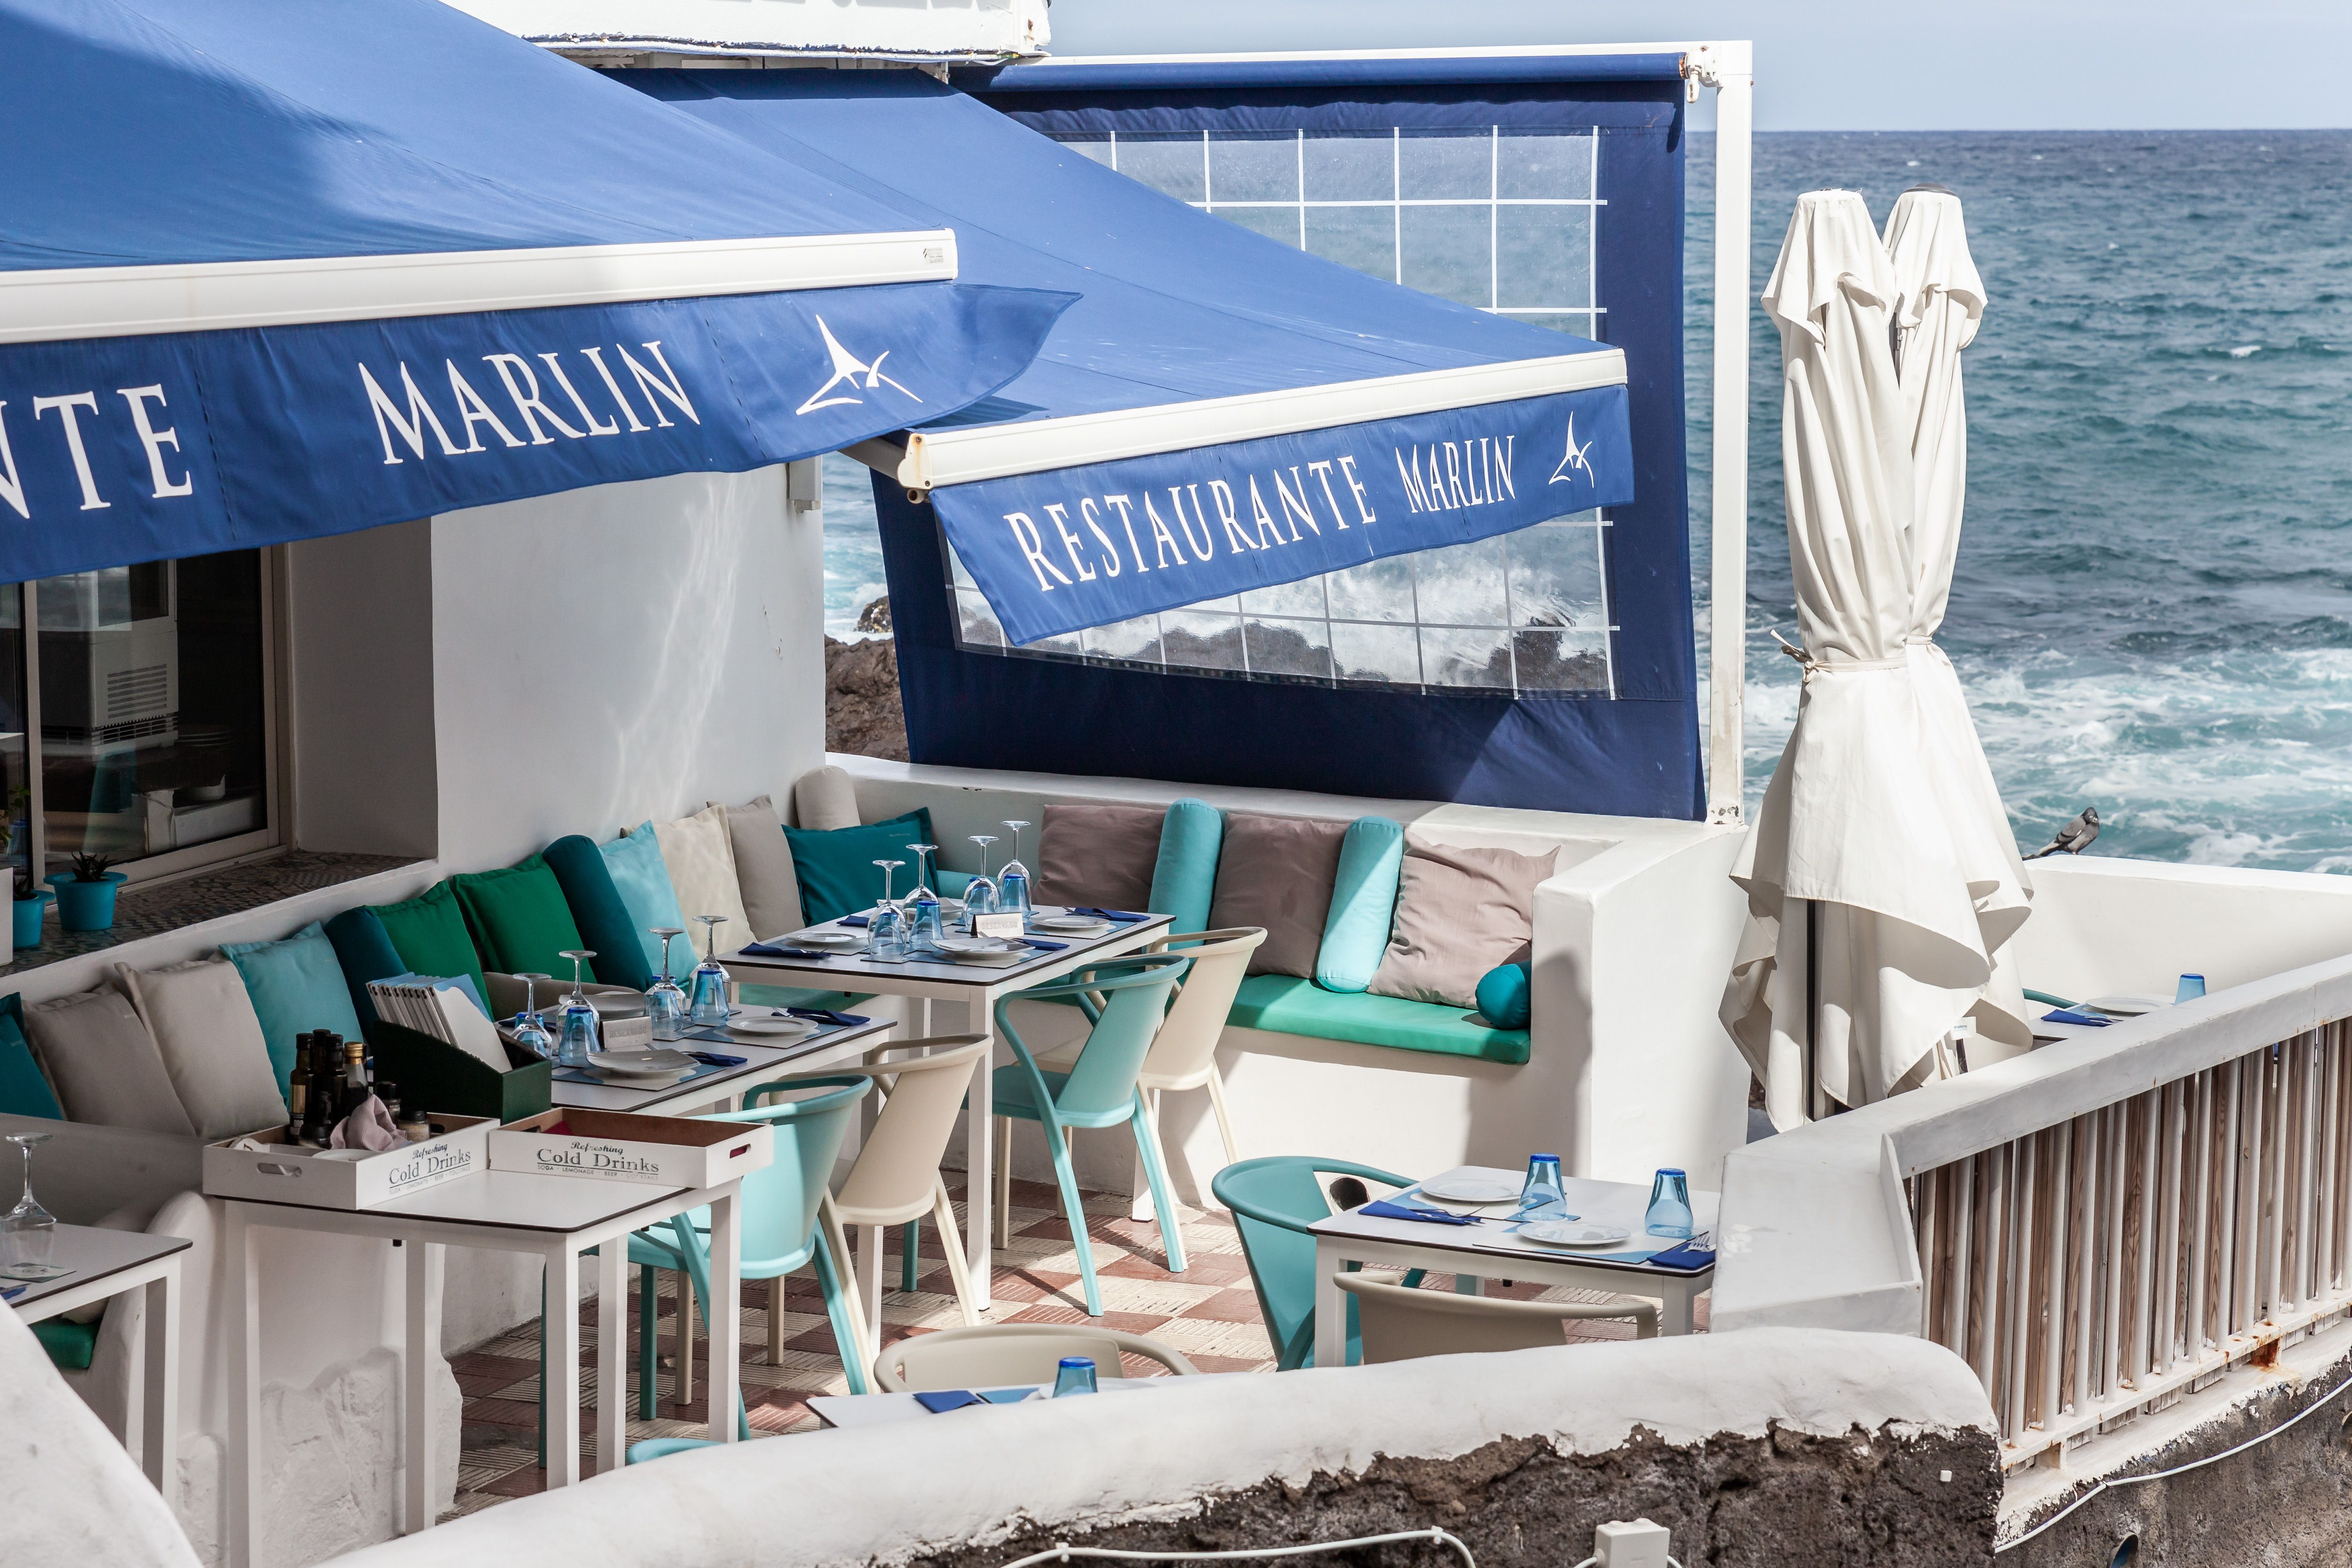 Foto 3 de Restaurante en Puerto de la Cruz | Restaurante Marlin